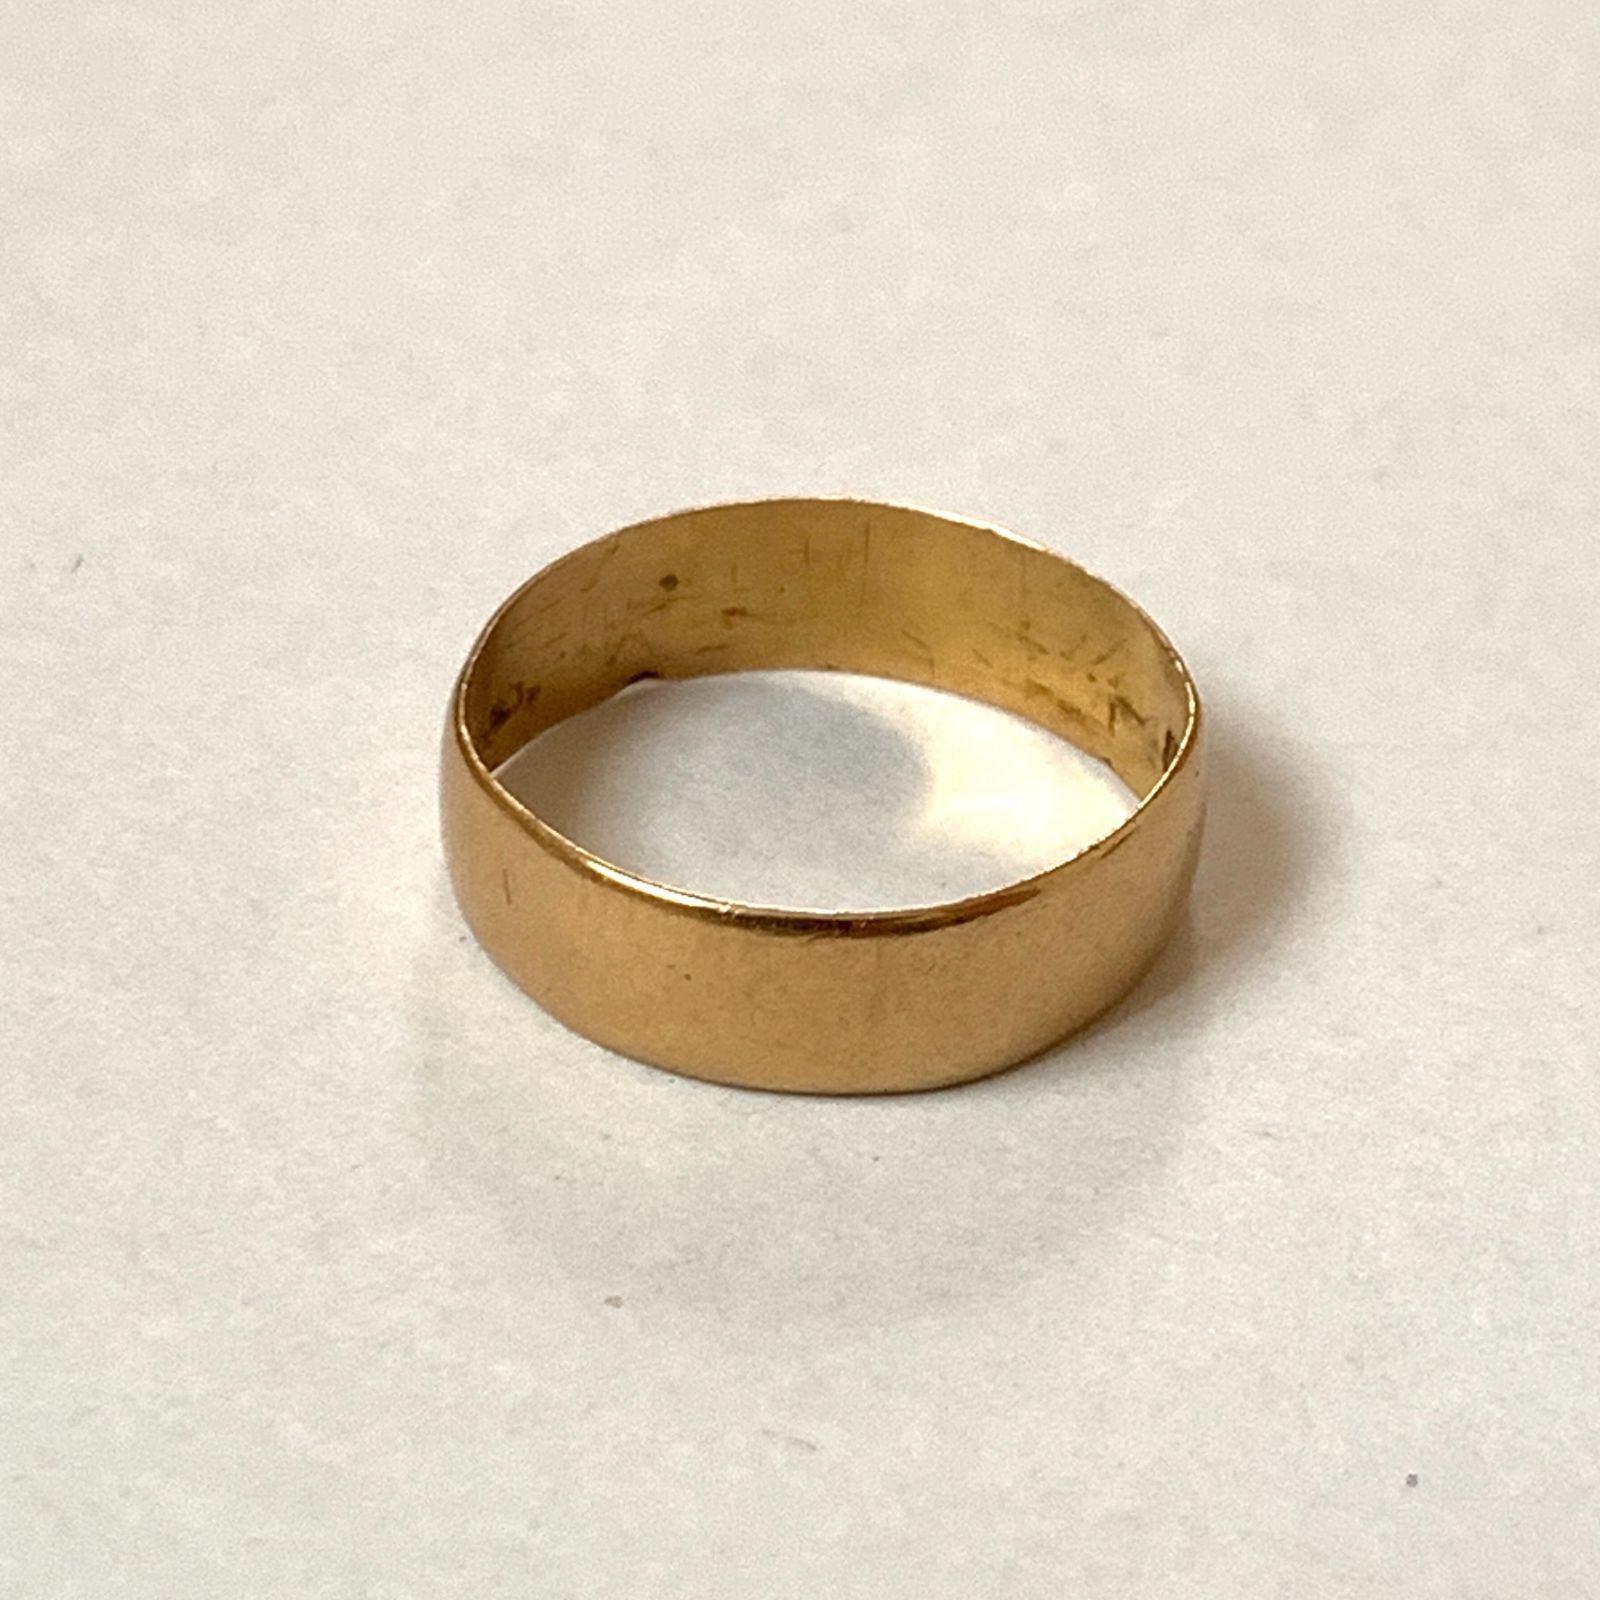 13号 】1910年代 22金無垢 アンティークリング 結婚指輪 婚約指輪